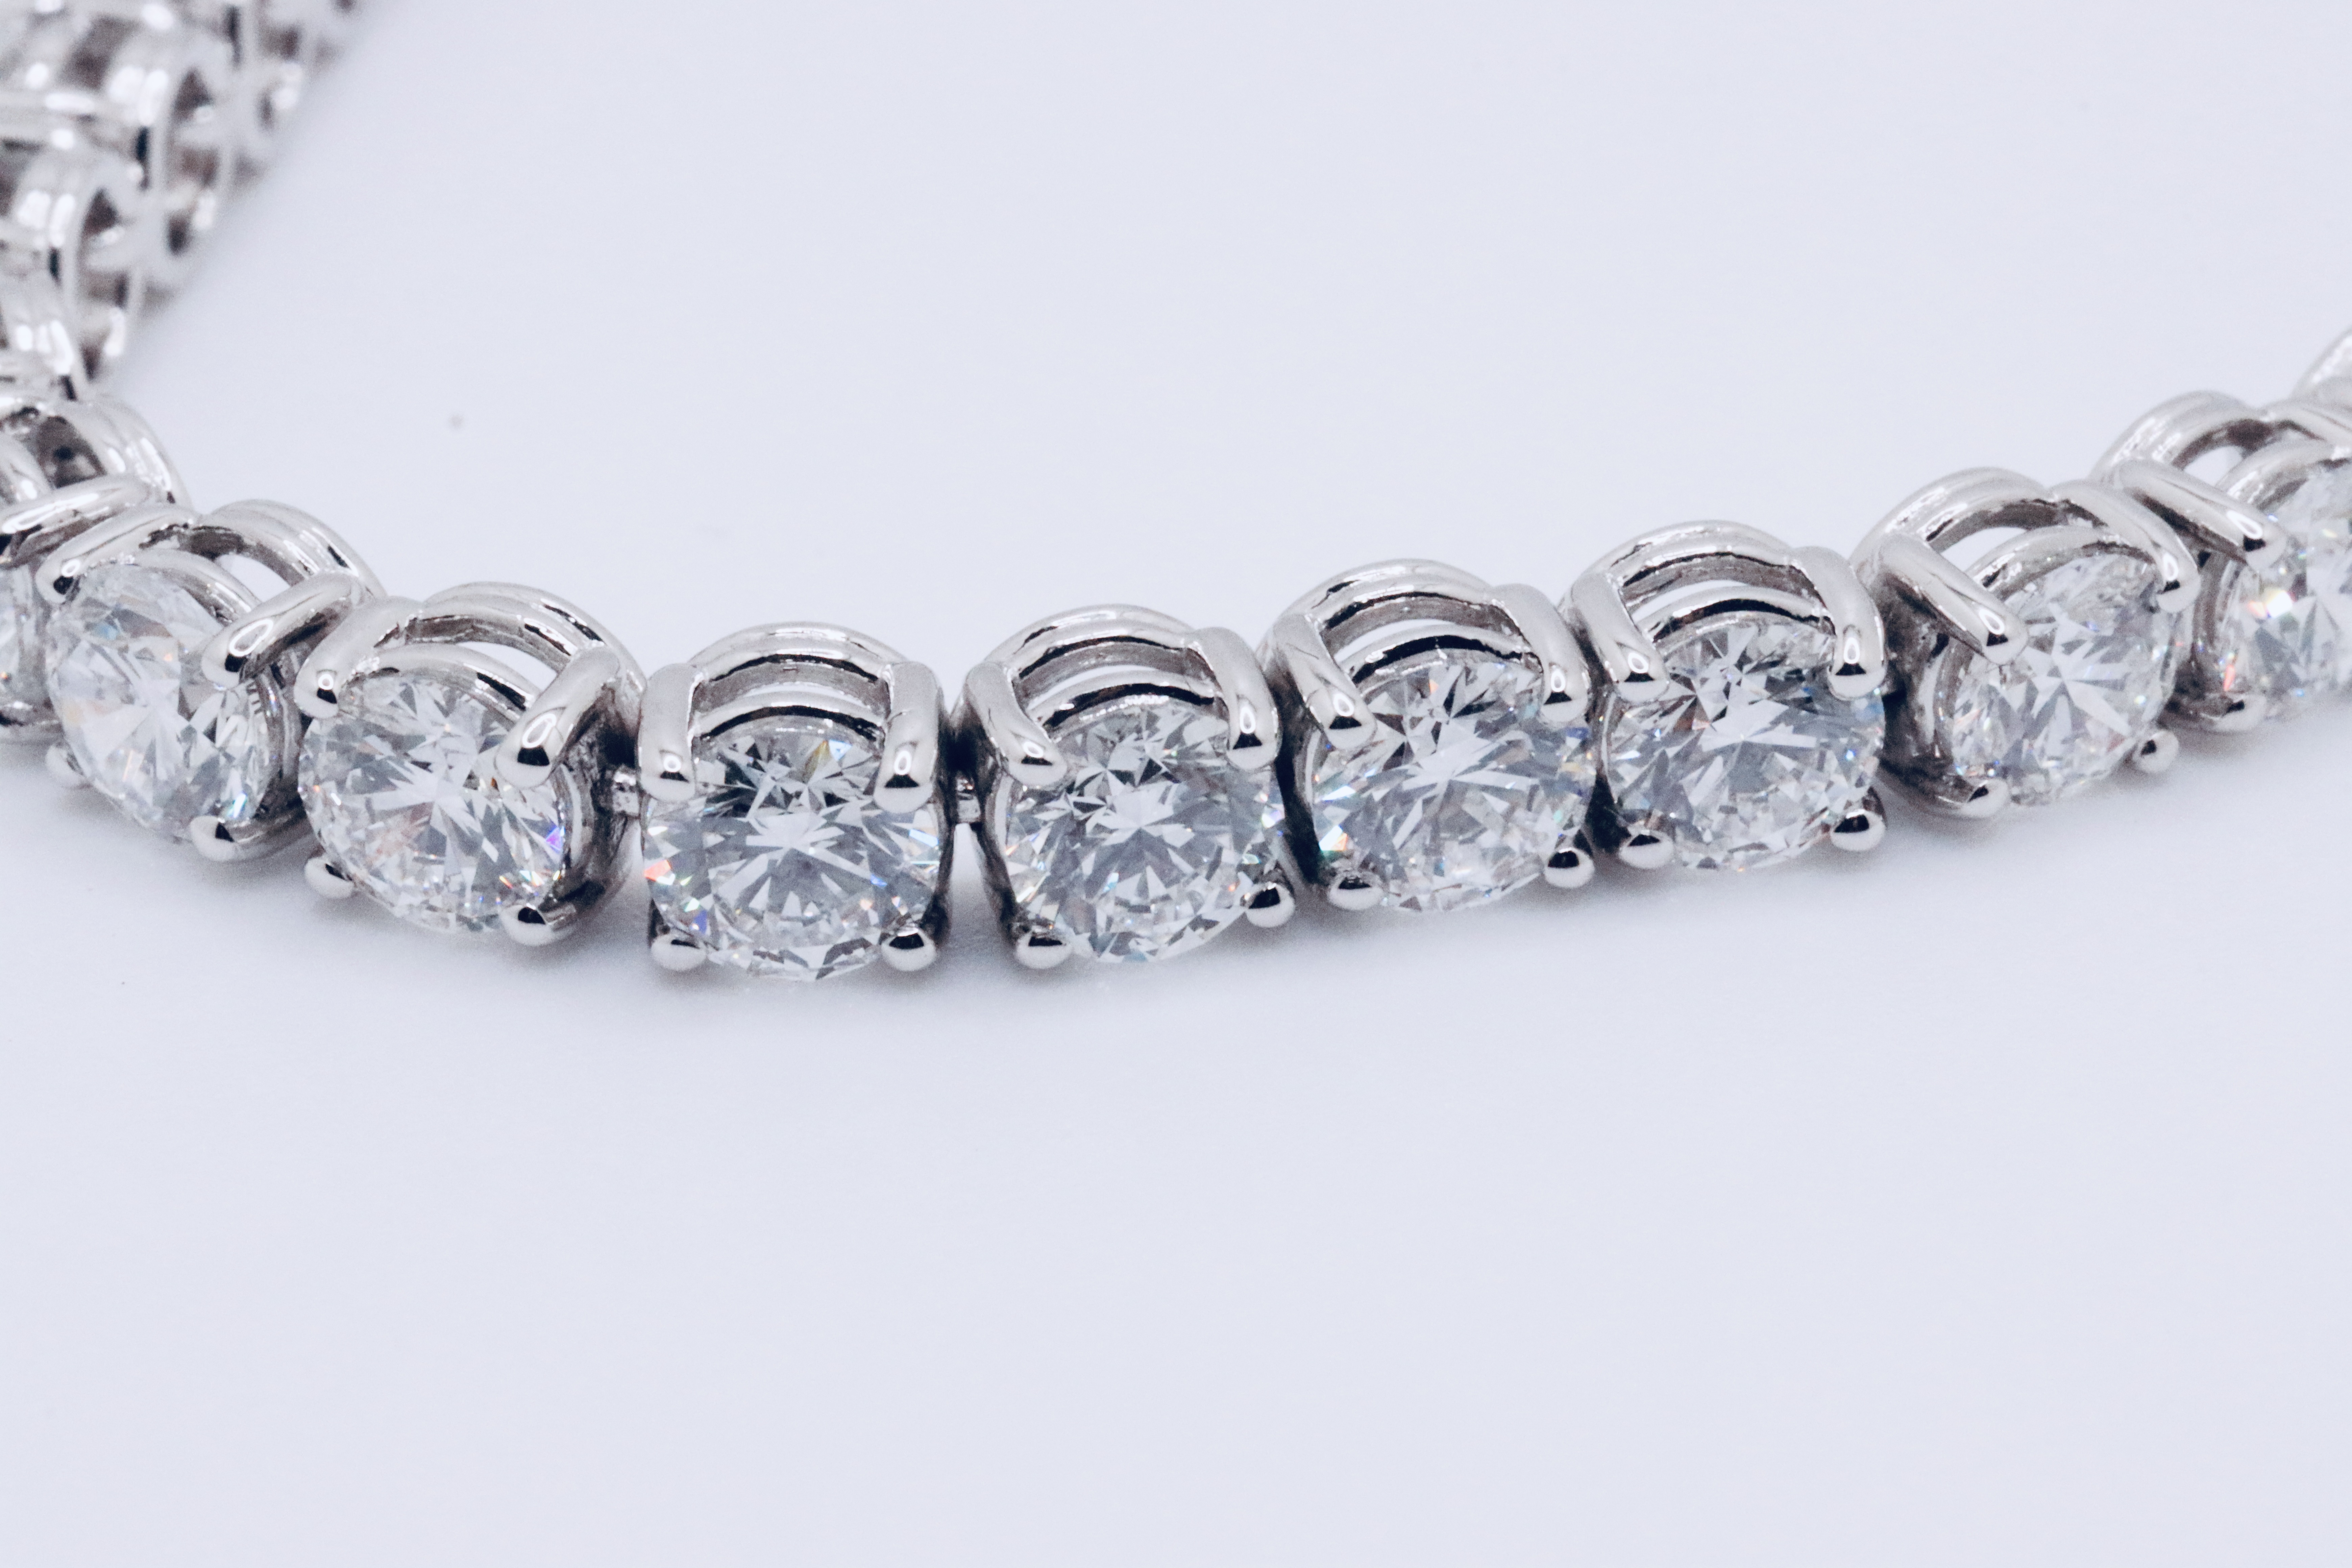 Round Brilliant Cut 14 Carat Diamond Tennis Bracelet D Colour VVS Clarity - 18Kt White Gold - IGI - Image 6 of 12